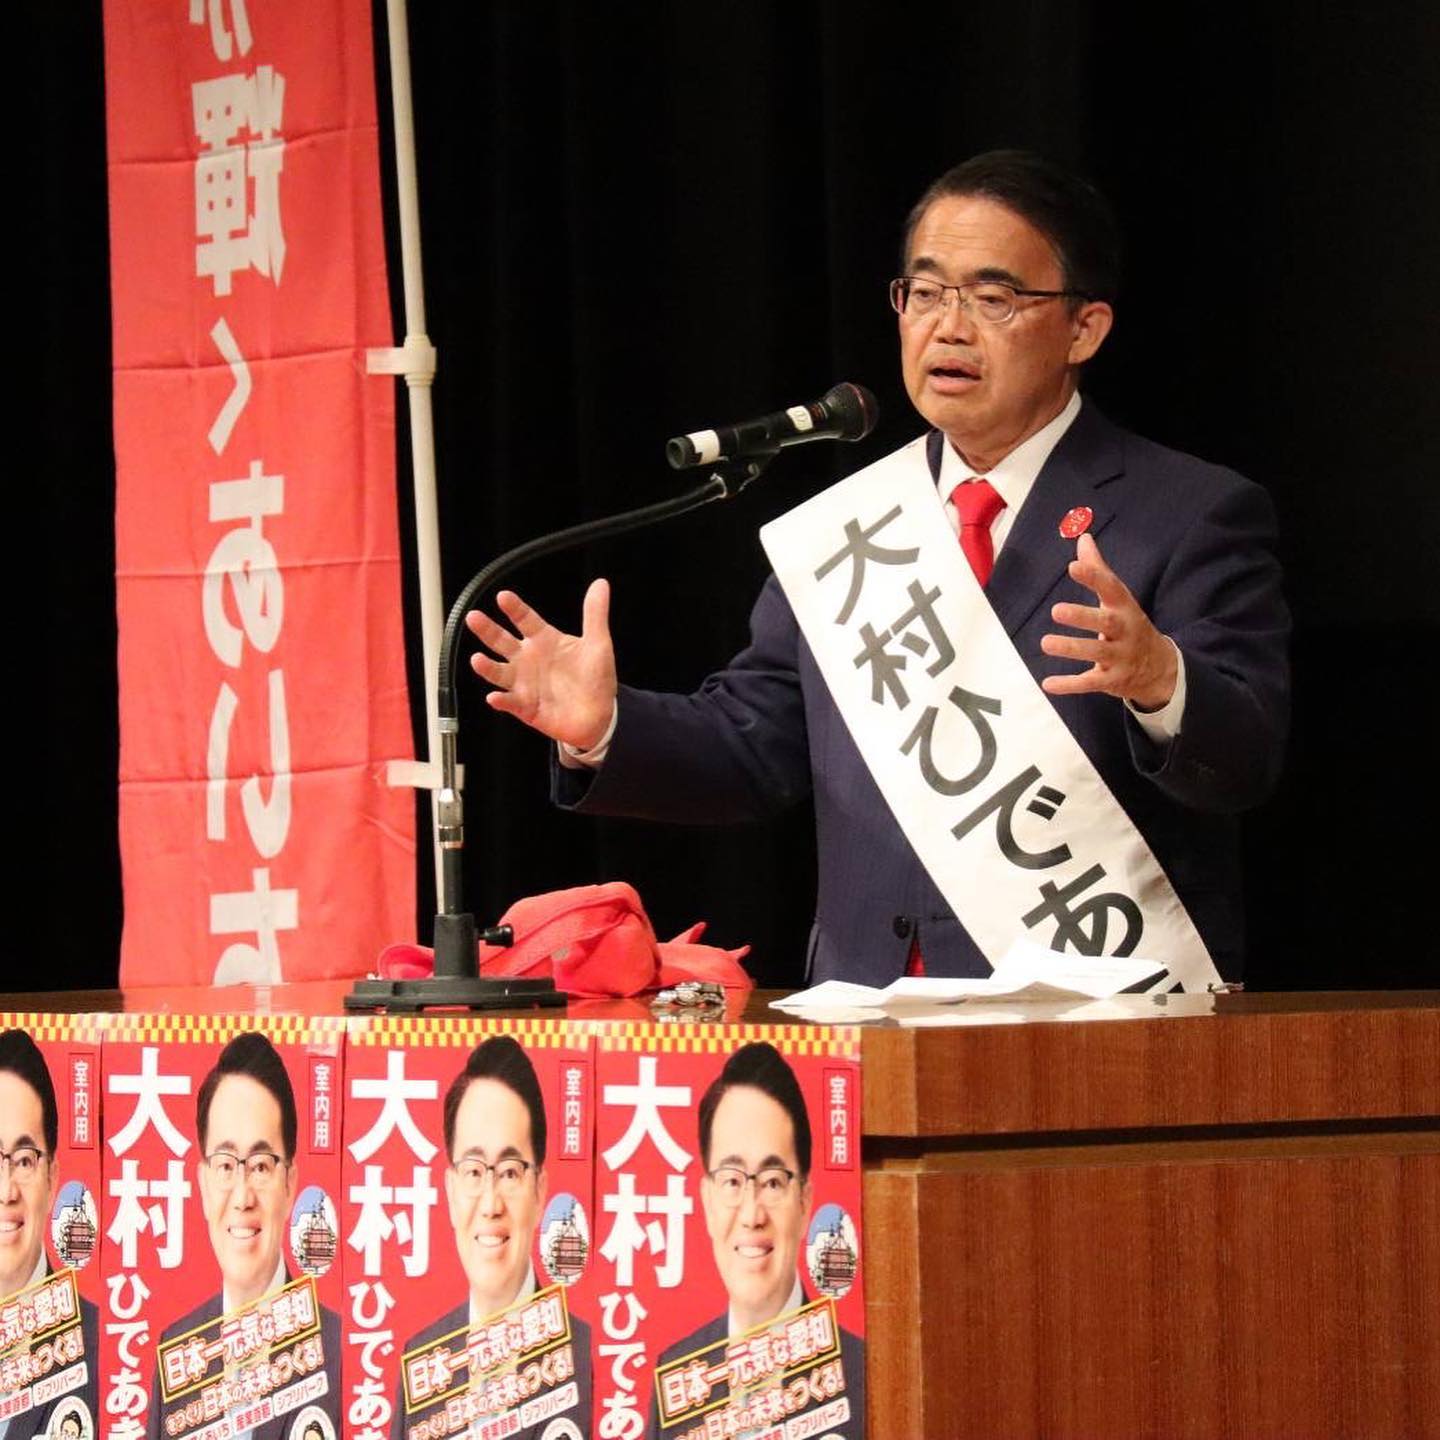 愛知知事選挙は「大村ひであき」候補